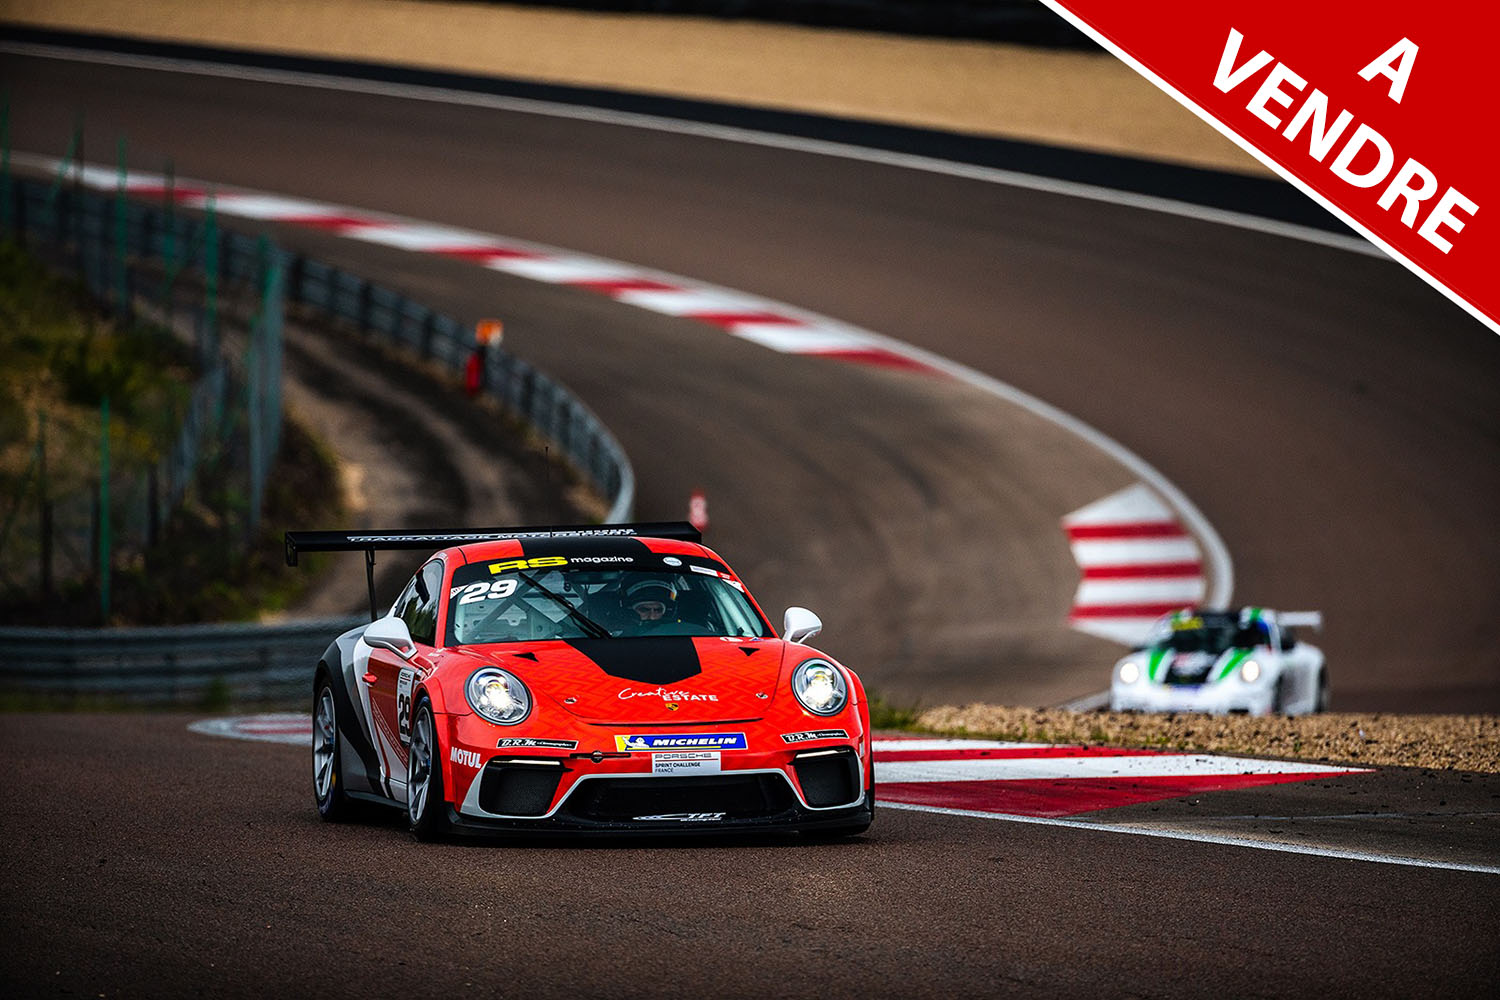 A Vendre : Porsche 991-2 GT3 Cup